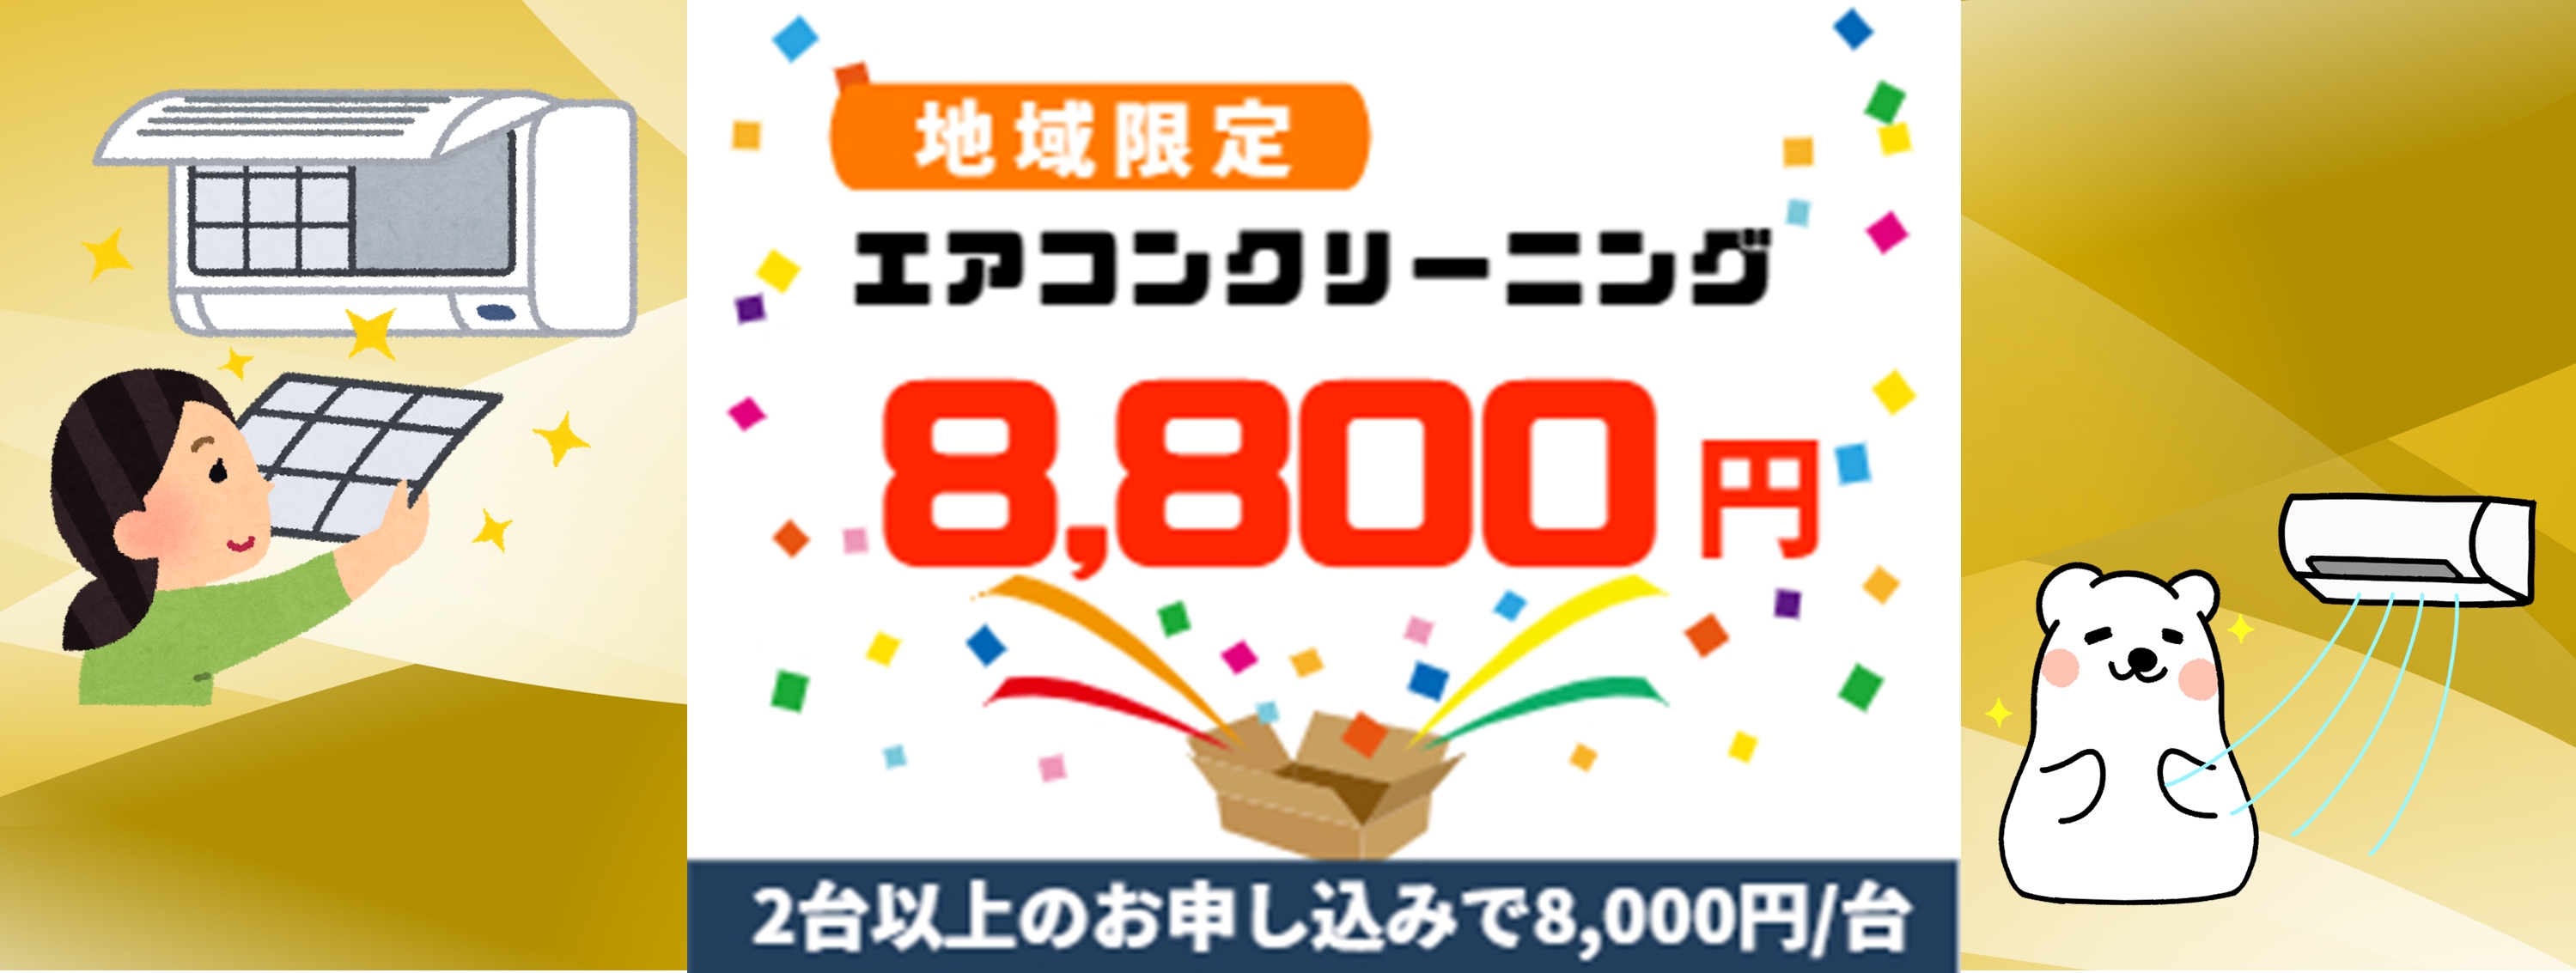 平塚市キャンペーン価格